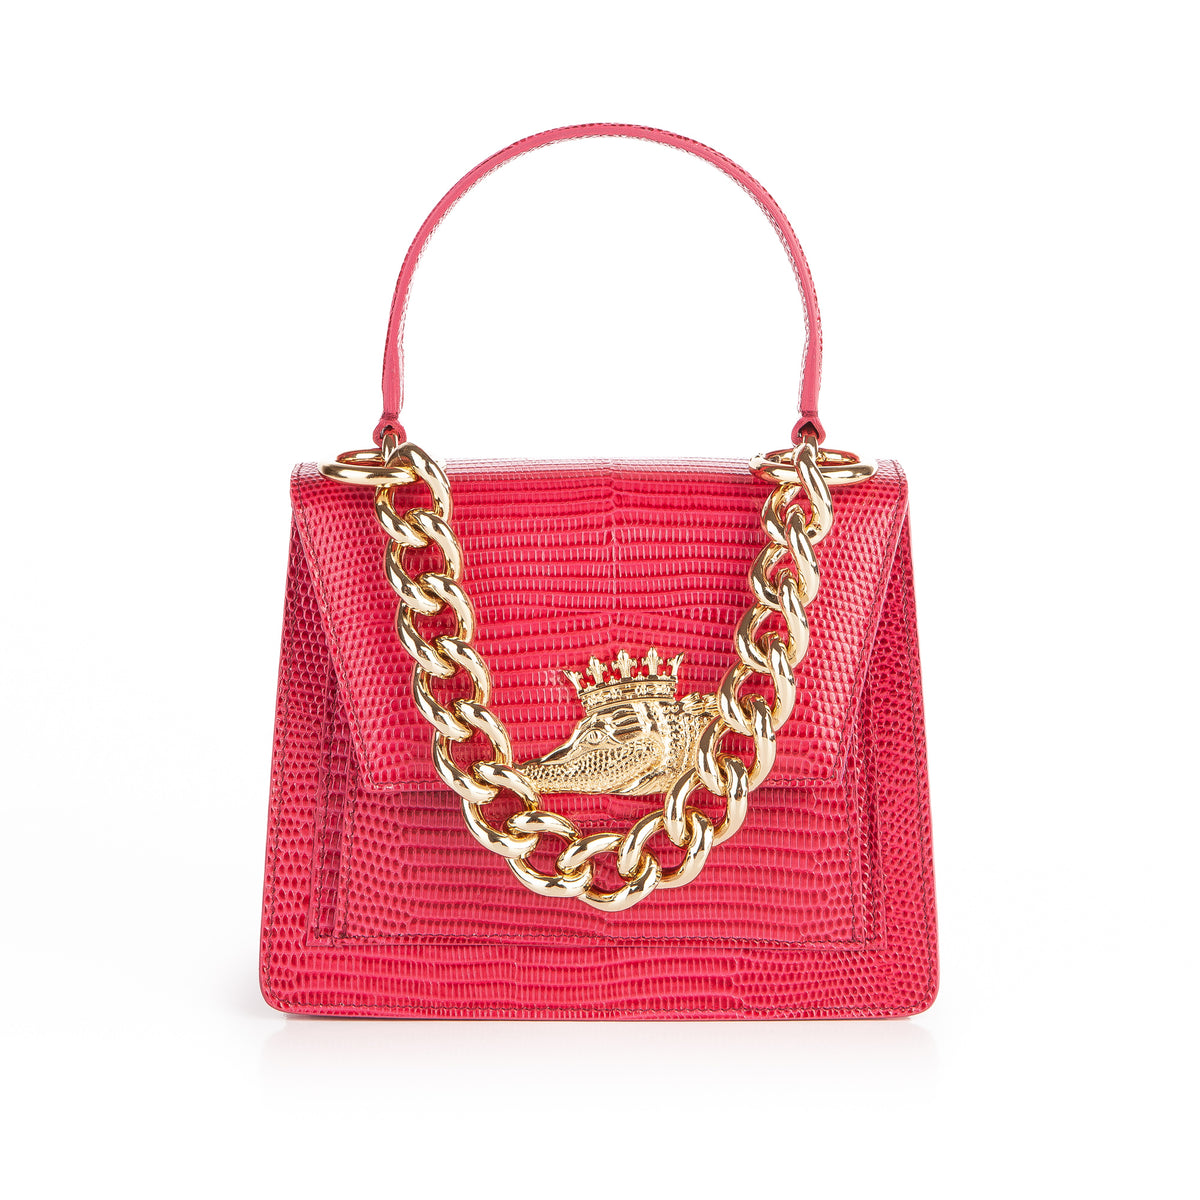 Bene Handbags: Luxury Italian Leather Handbags